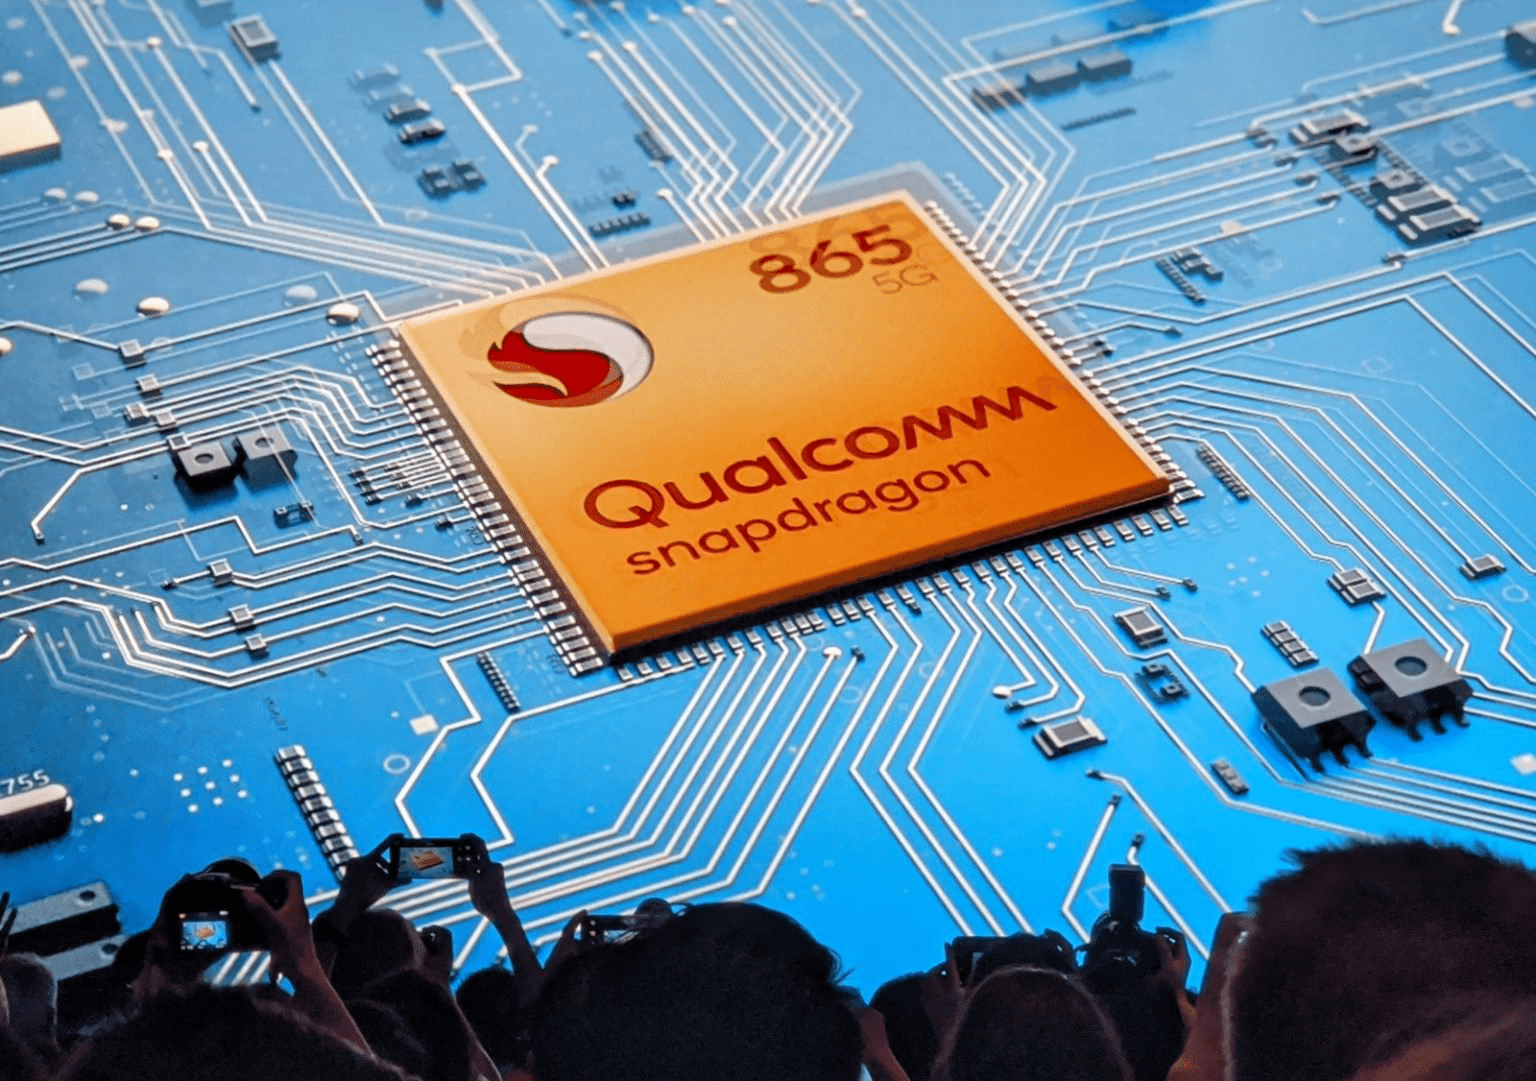 Le Qualcomm Snapdragon 865 en détail : 5G, Wi-Fi 6, 144 Hz HDR, 8K, 200 mégapixels…